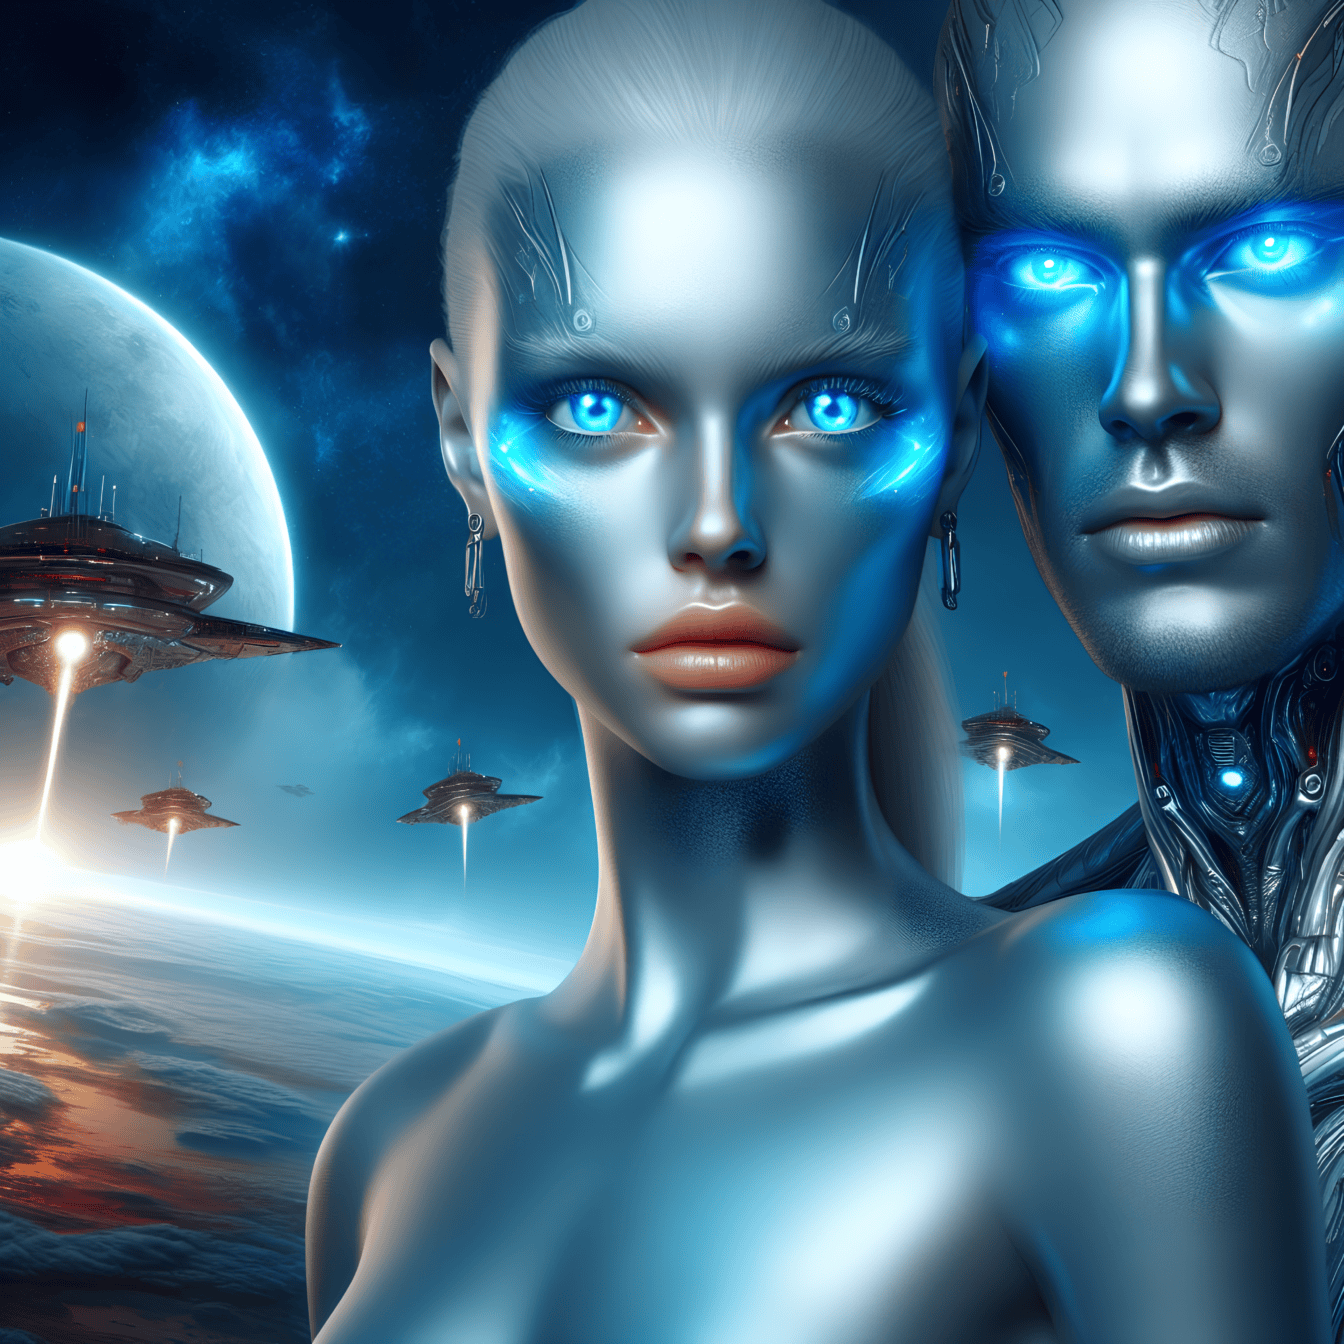 Muotokuva mies- ja naispuolisesta humanoidista, maapallon ulkopuolisista kyborgiroboteista